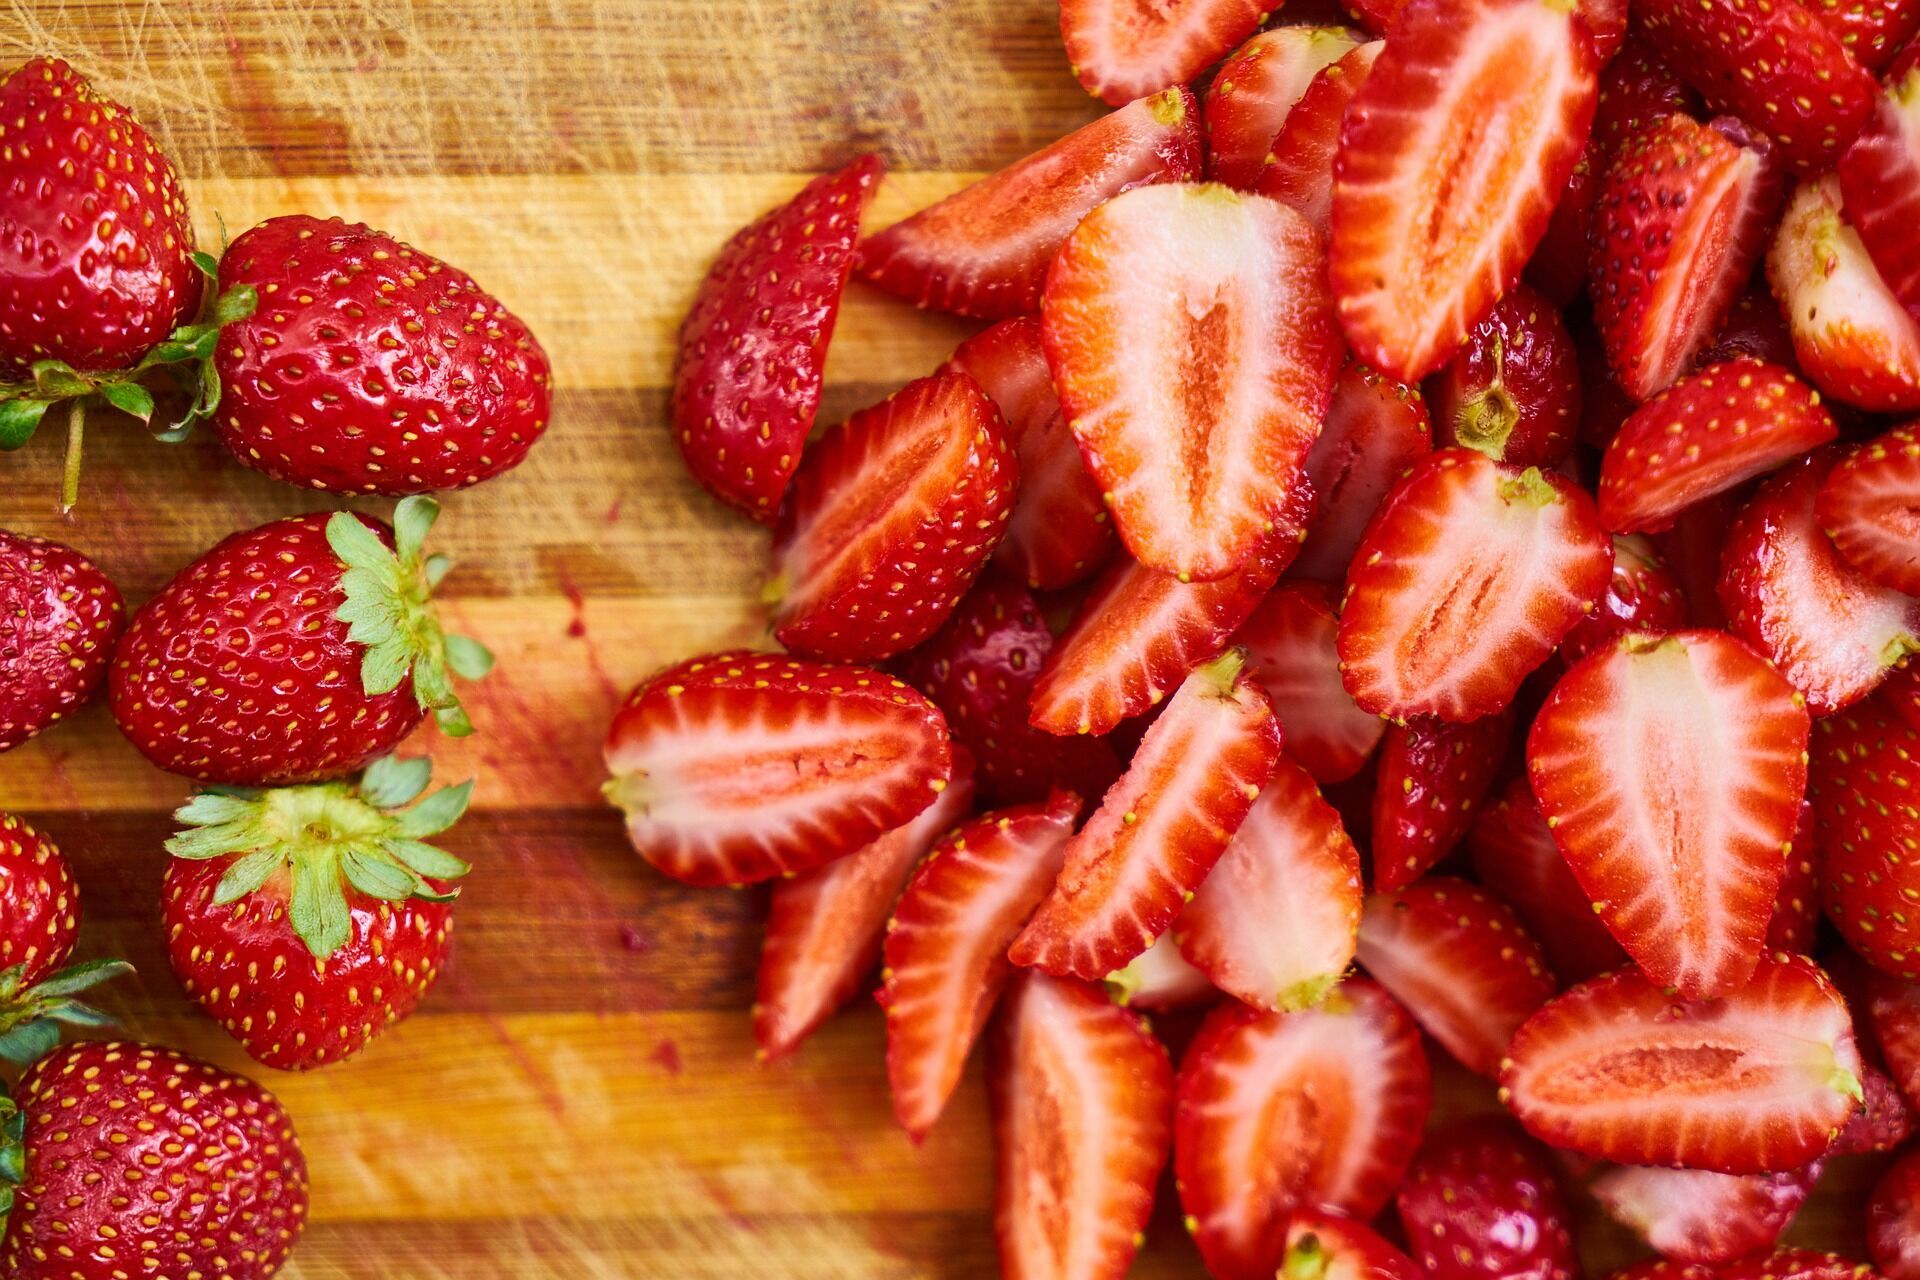 Червоні фрукти та ягоди впливають на роботу генів, які уповільнюють процес накопичення жиру